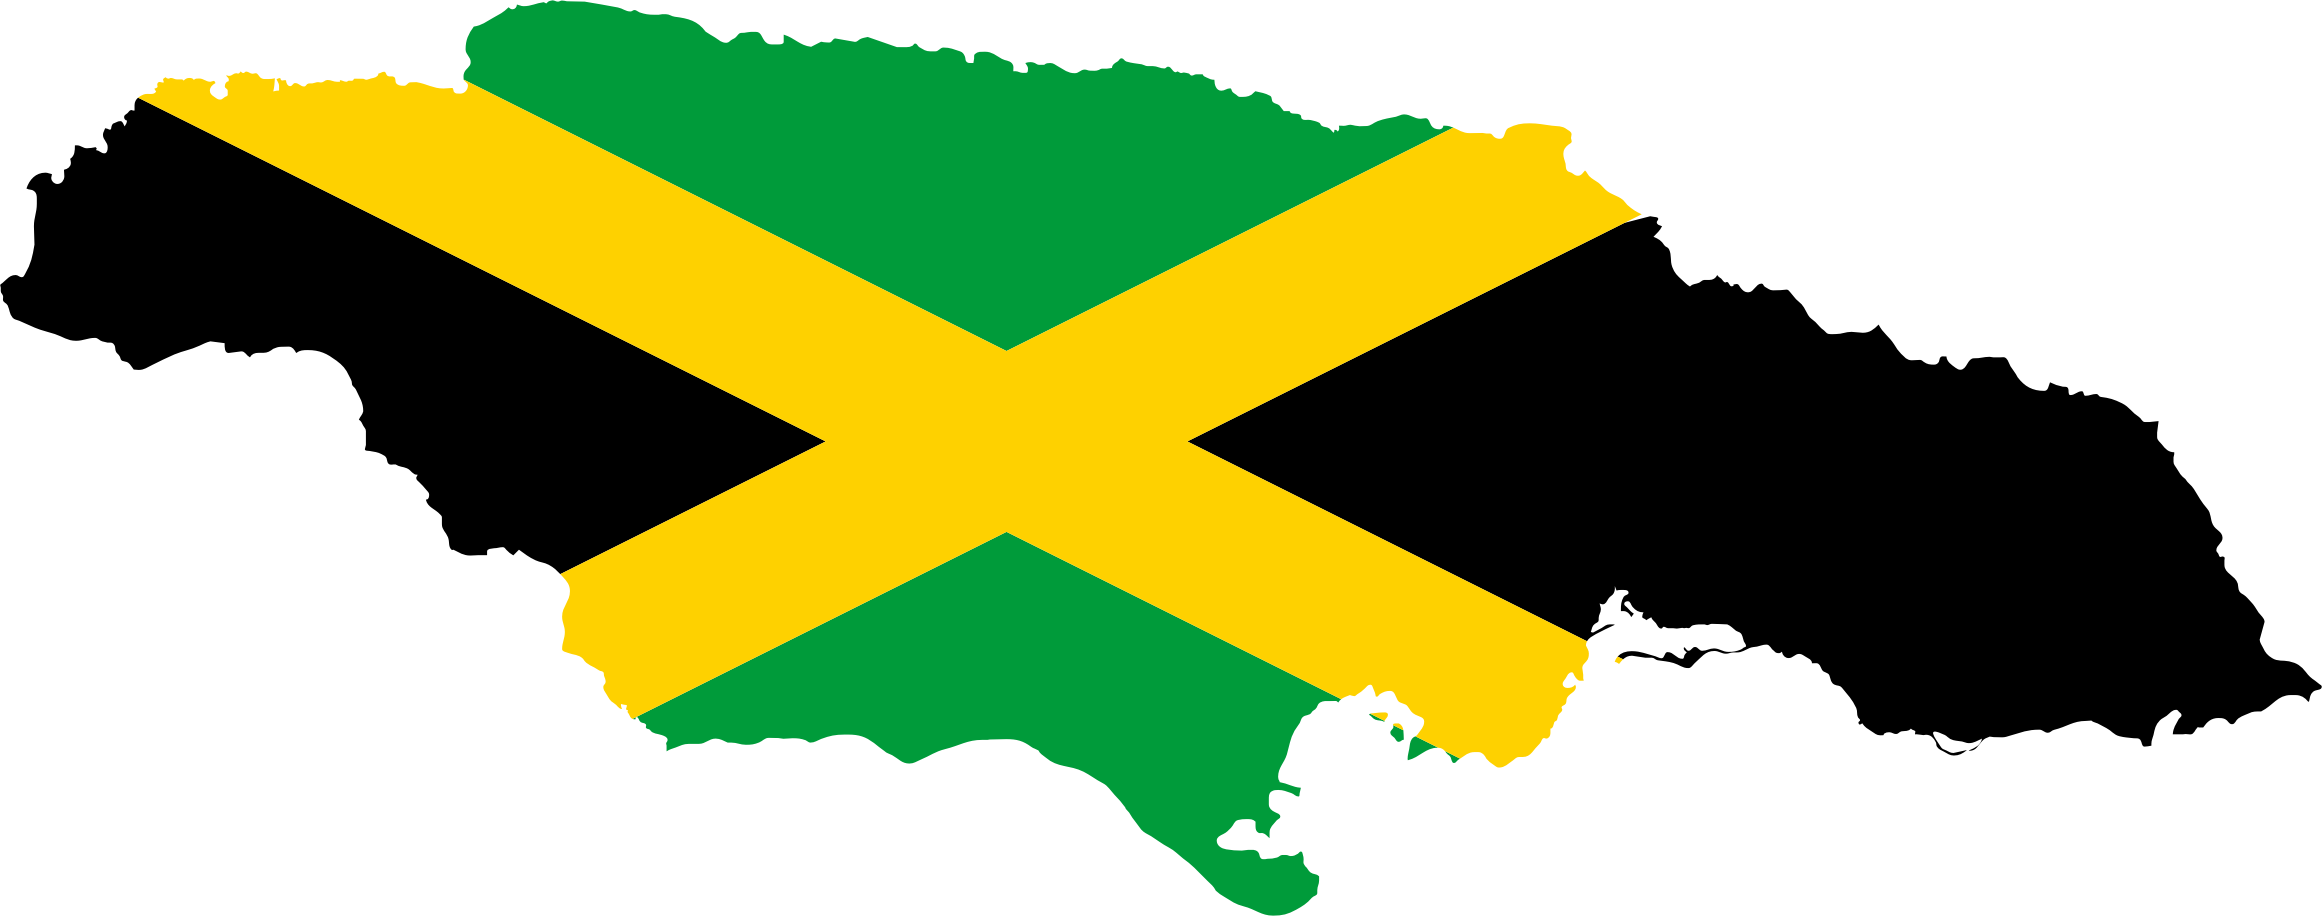 Clipart - Jamaica Flag Map (2322x916)